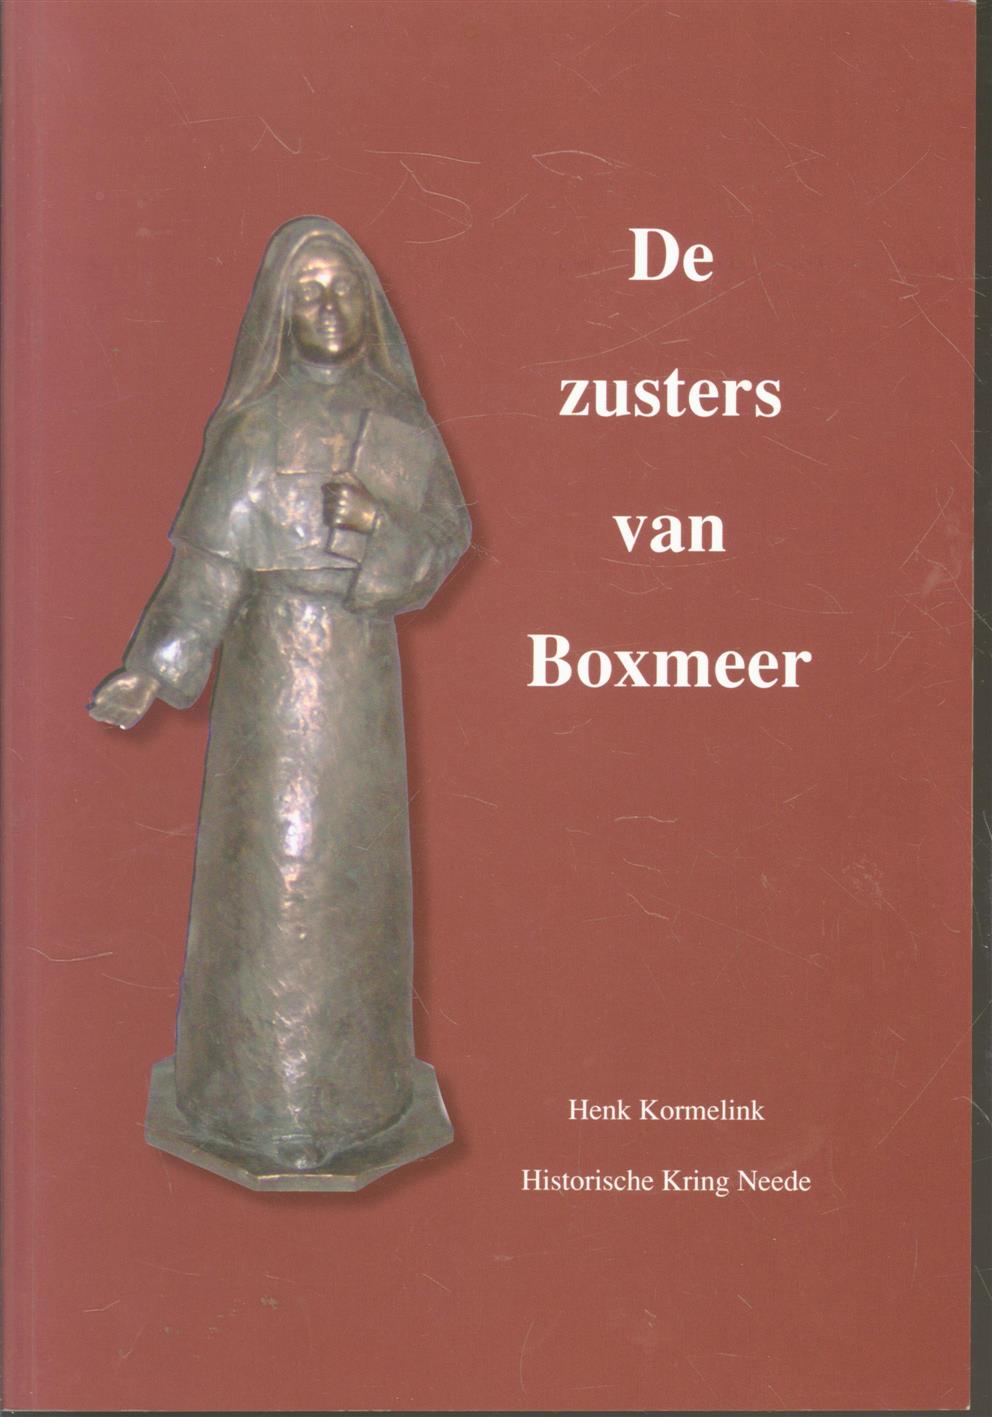 Kormelink, Henk - De zusters van Boxmeer, over de zusters van Julie Postel in Neede, 1948